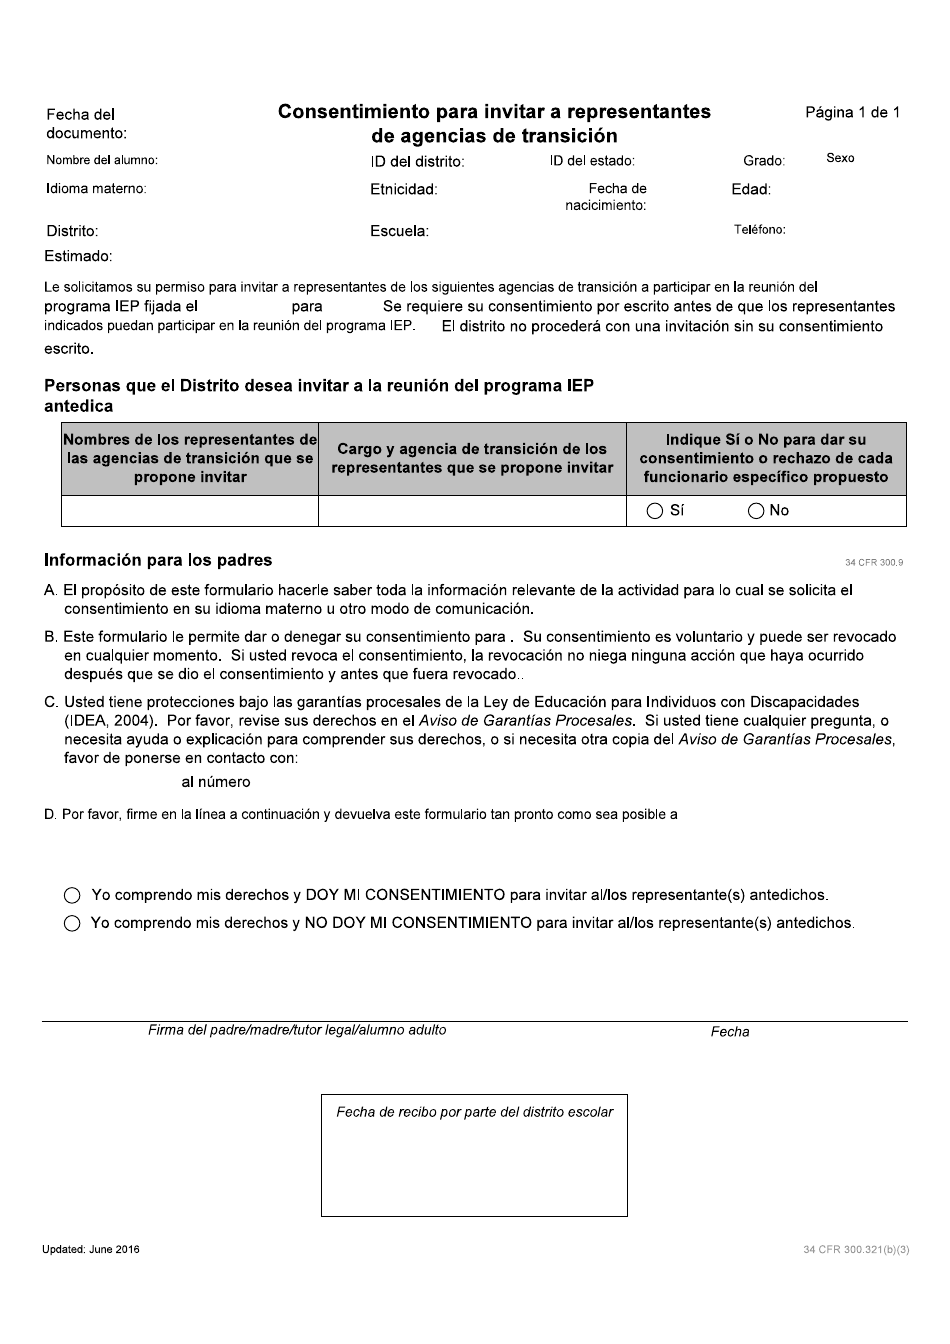 Consentimiento Para Invitar a Representantes De Agencias De Transicion - Idaho (Spanish), Page 1